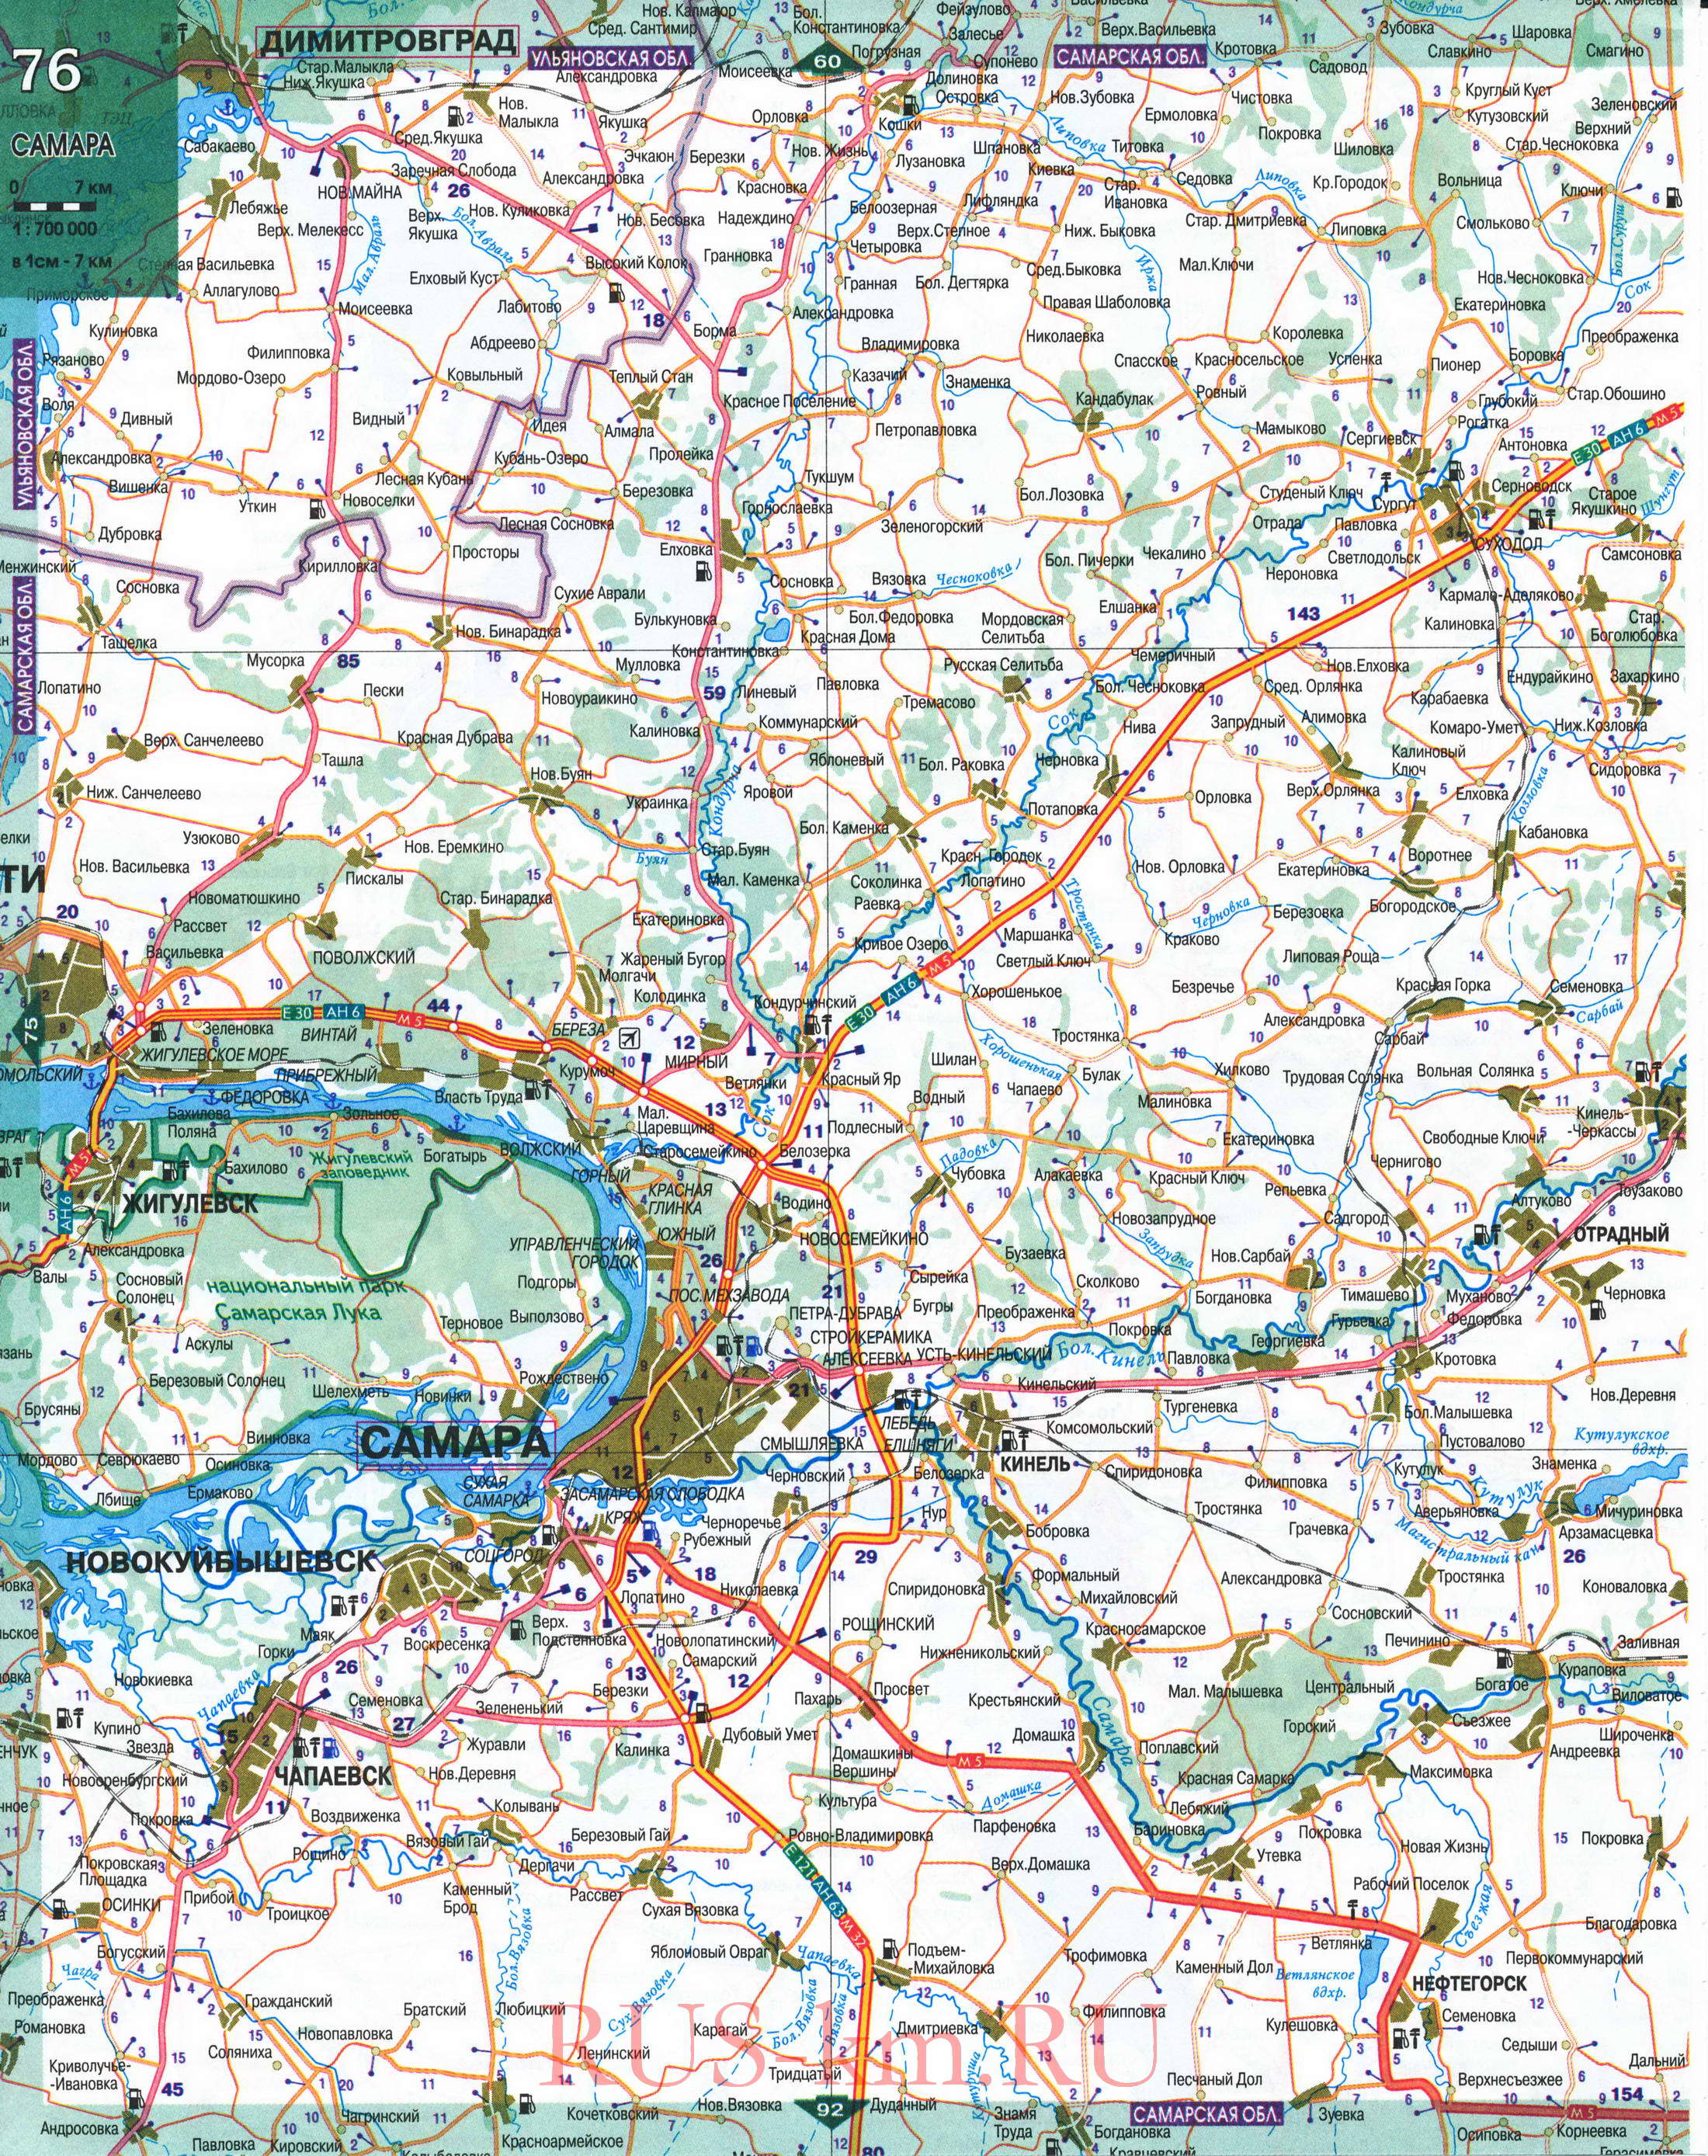 Карта Ульяновской области автомобильная. Подробная карта дорог Ульяновской области 1см:7км, C1 - 